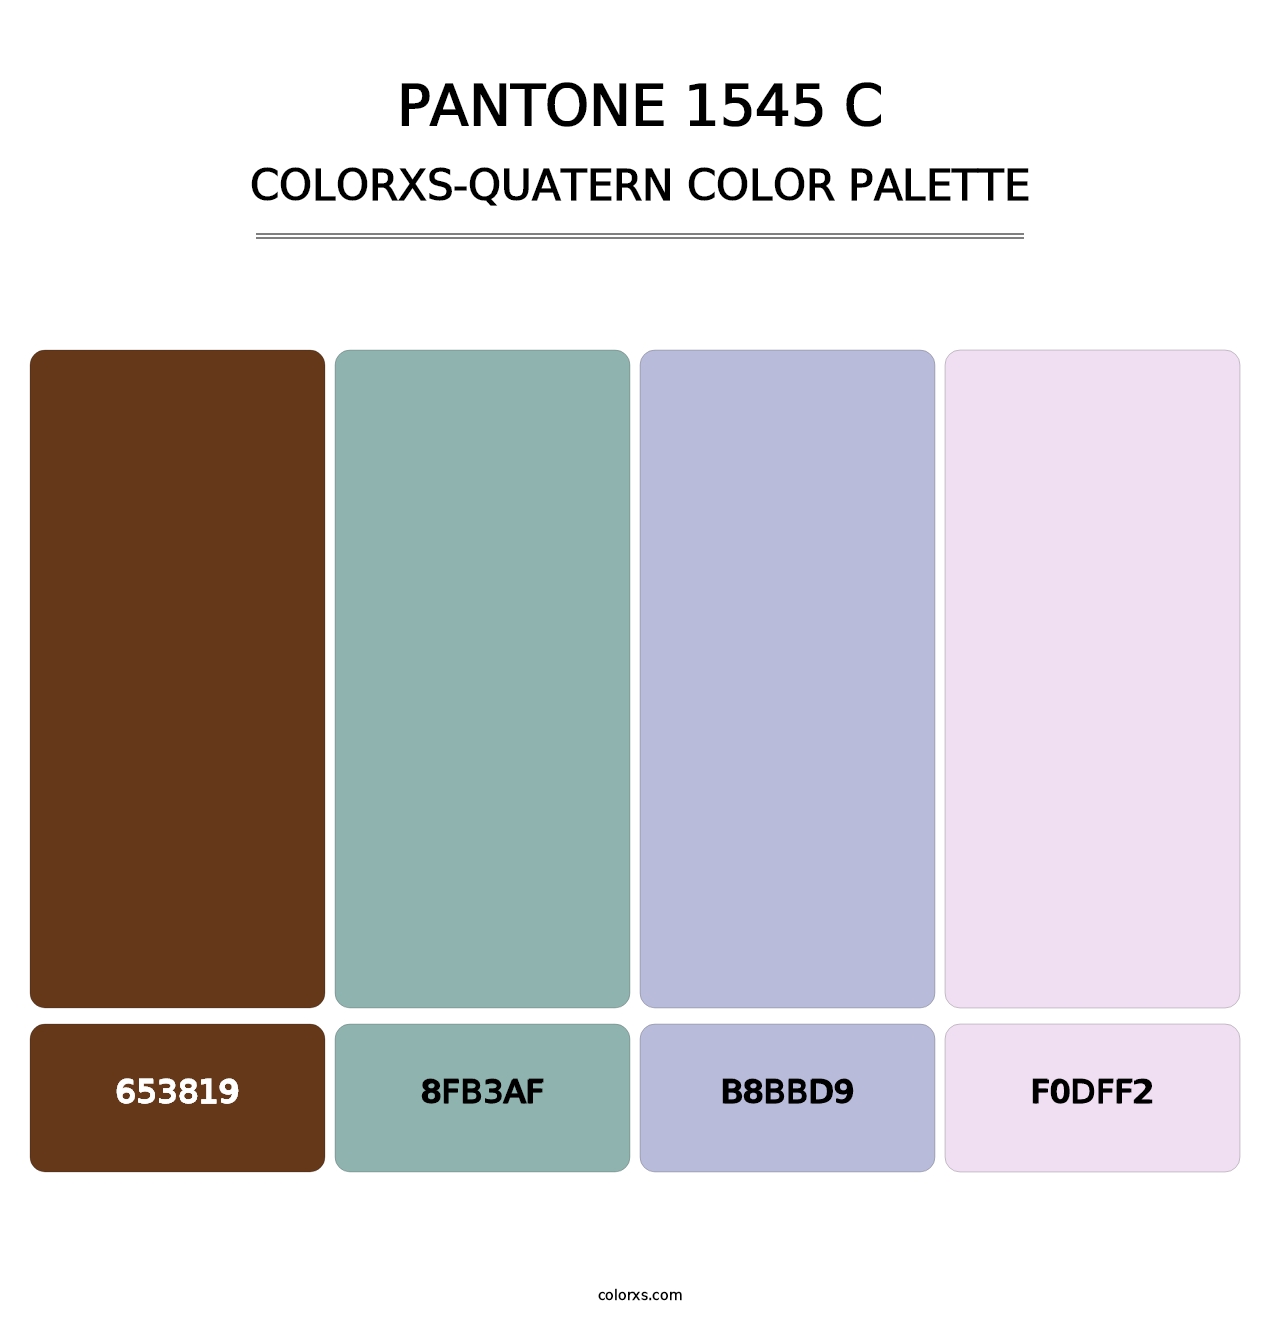 PANTONE 1545 C - Colorxs Quatern Palette